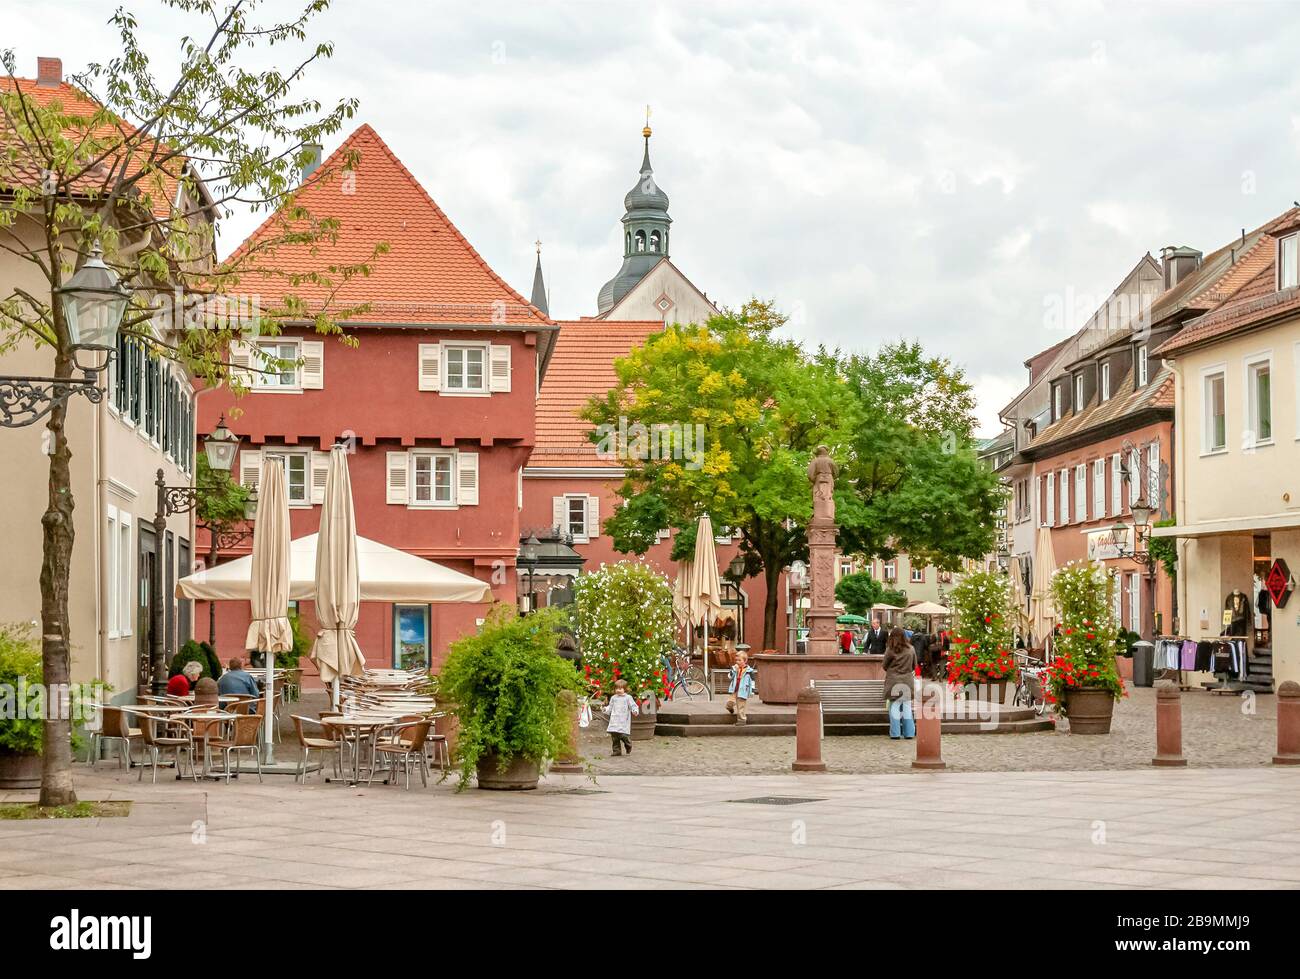 Historic Town center of Ettlingen, Baden Wuerttemberg, Southern Germany Stock Photo